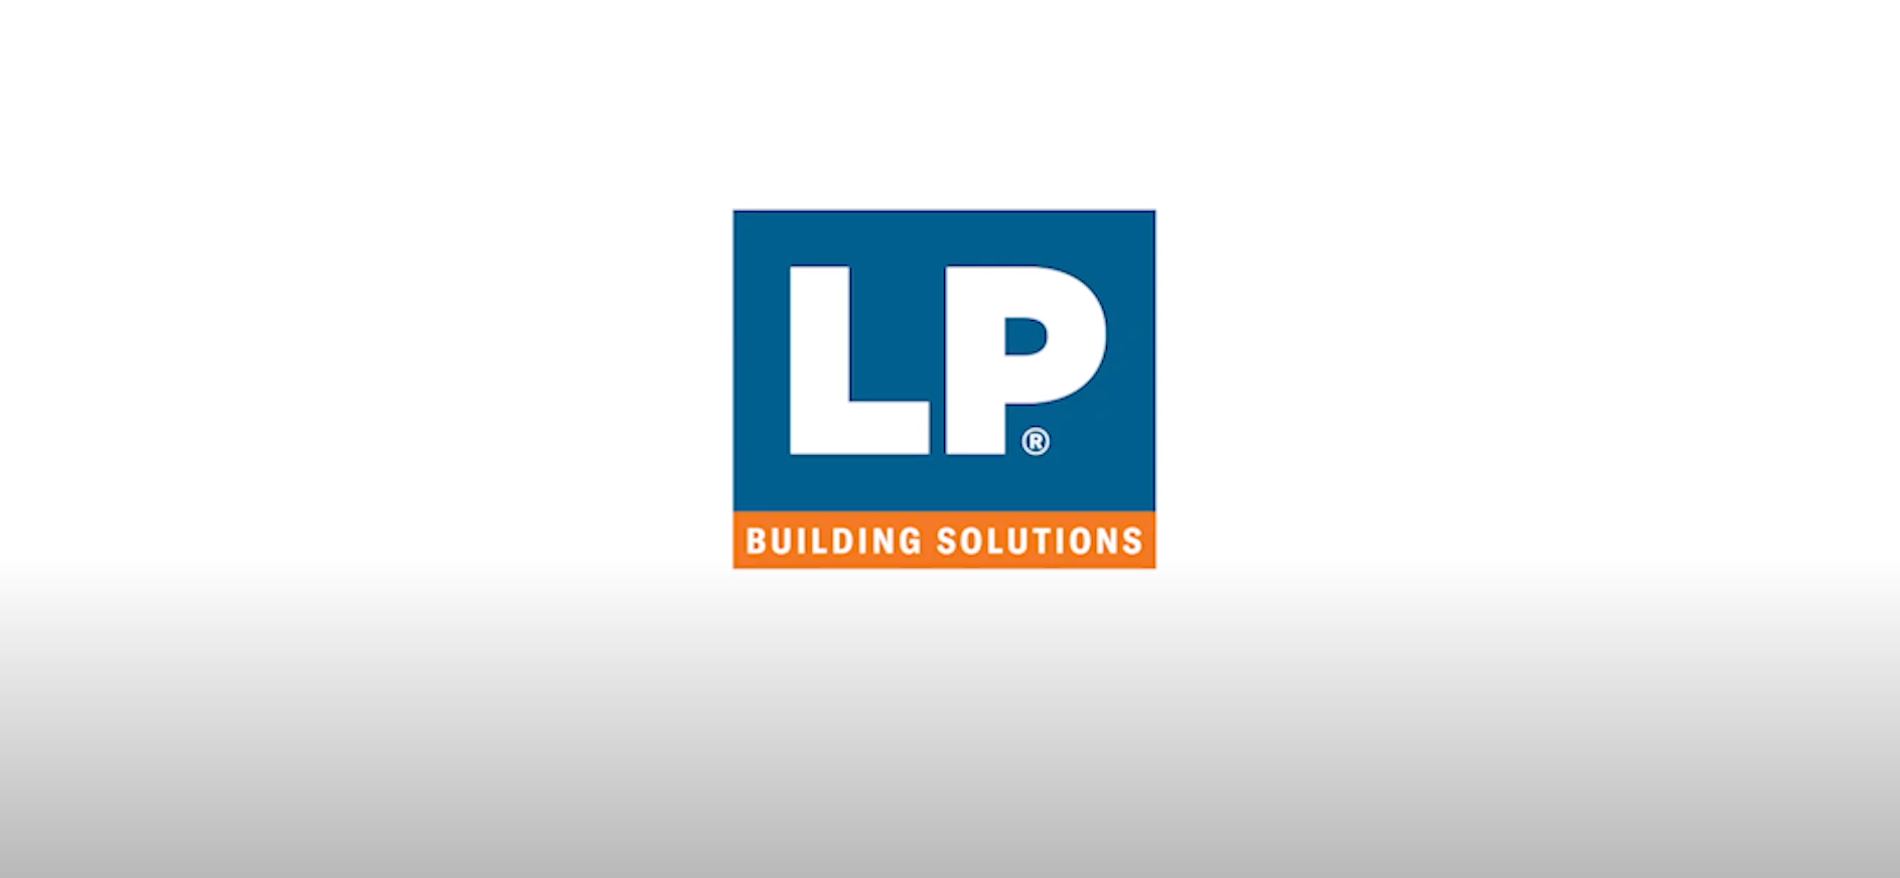 LP - Building a Better World